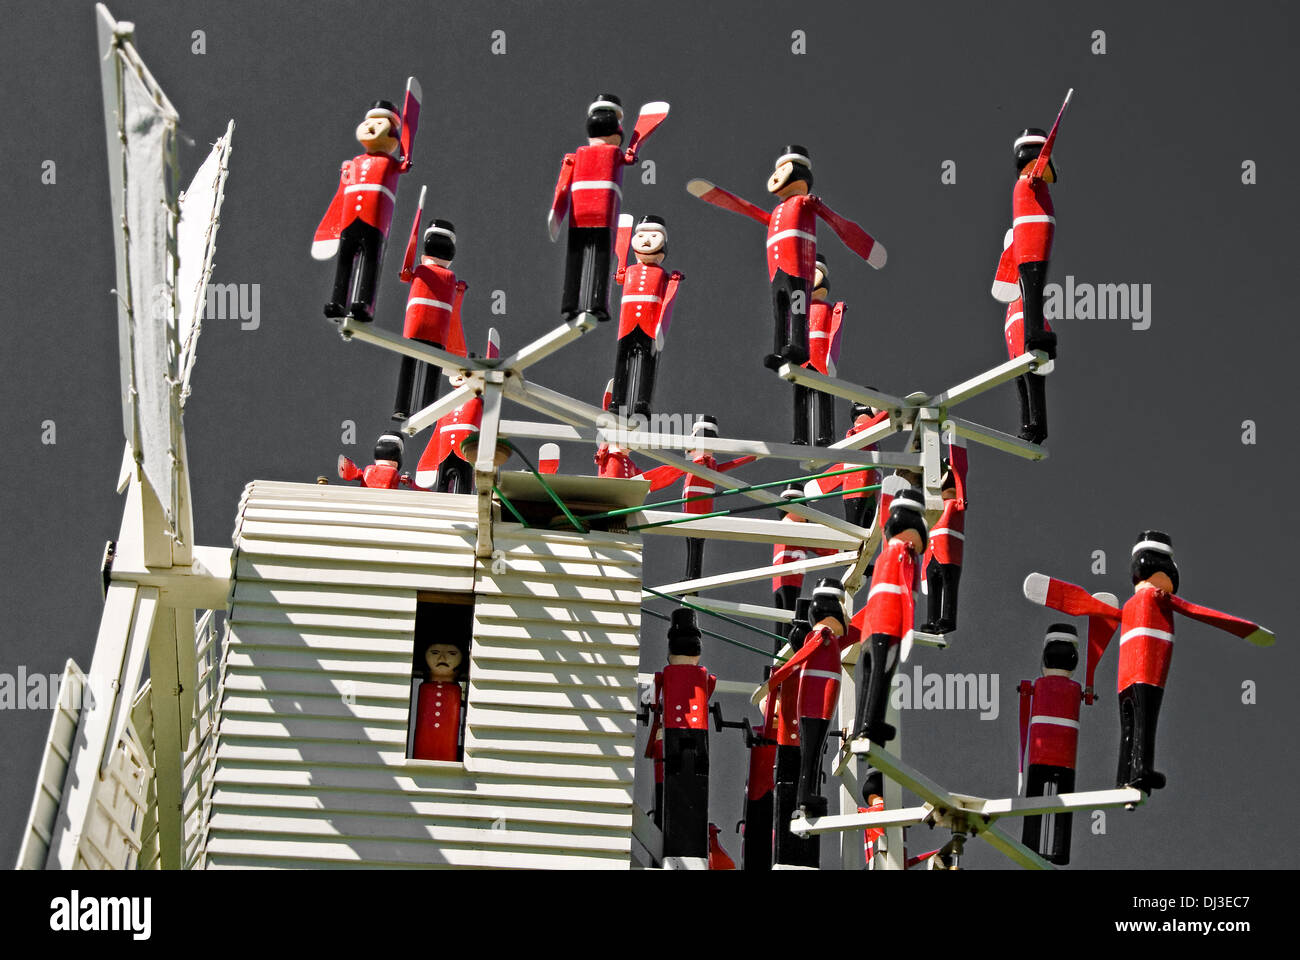 Une image monochrome d'une girouette unique en uniforme rouge avec des petits soldats. Banque D'Images